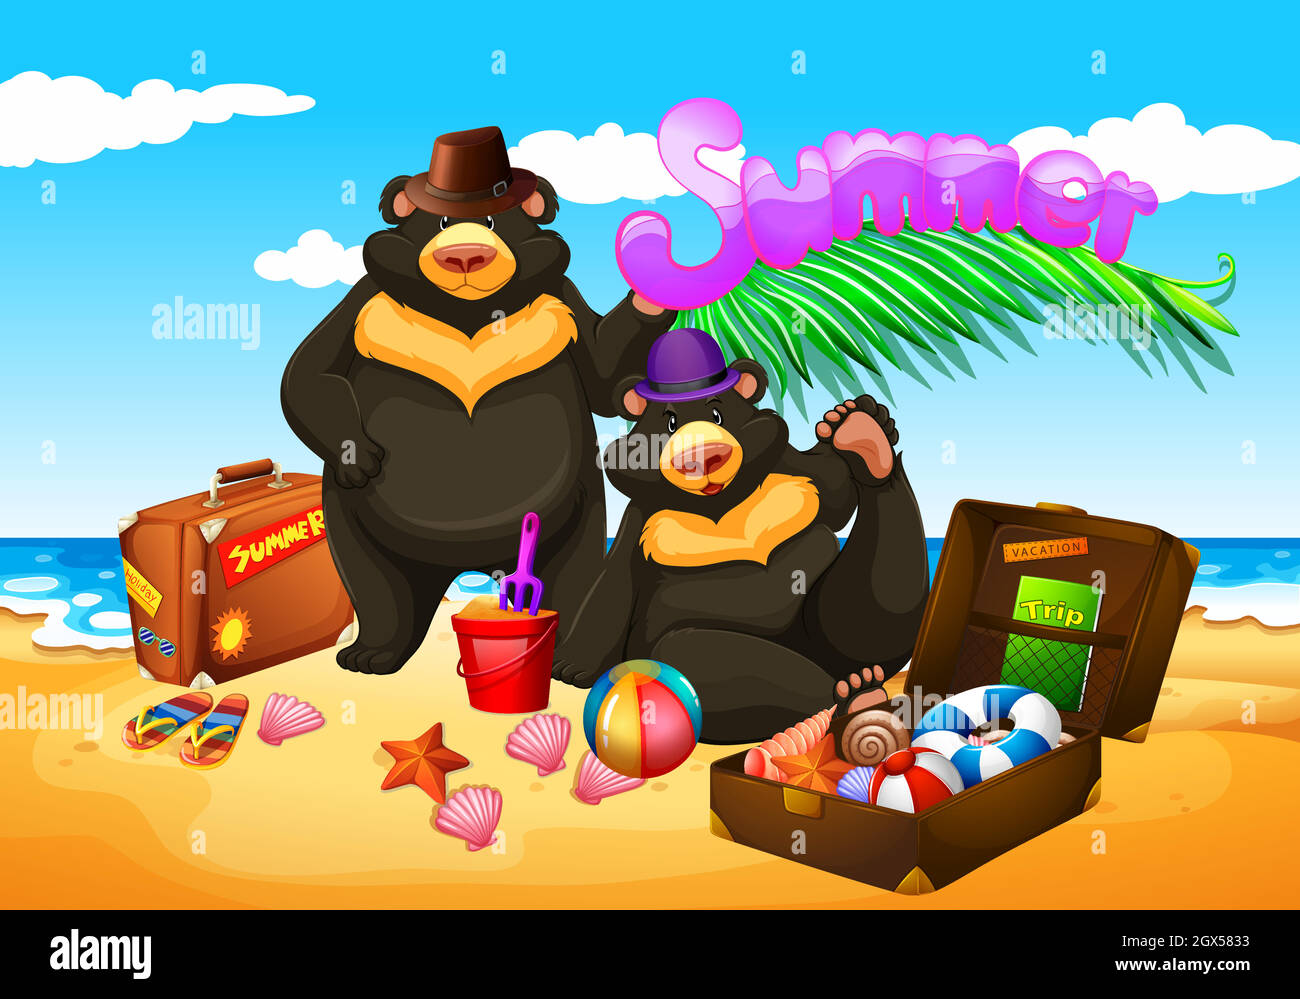 Two bears enjoy summer on the beach Stock Vector